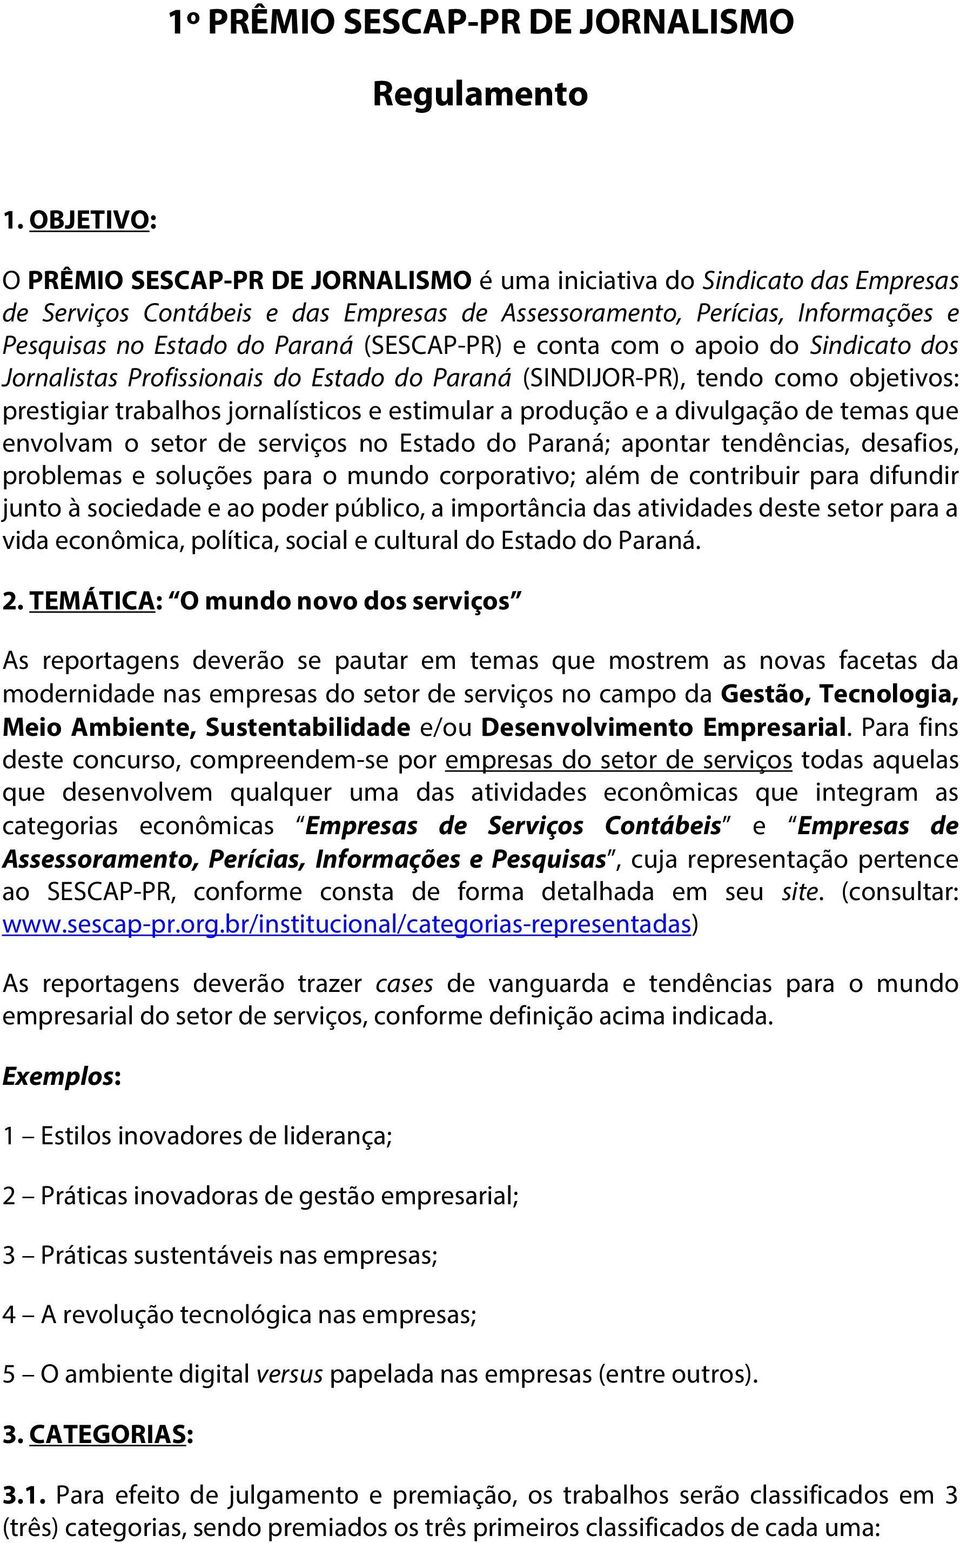 (SESCAP-PR) e conta com o apoio do Sindicato dos Jornalistas Profissionais do Estado do Paraná (SINDIJOR-PR), tendo como objetivos: prestigiar trabalhos jornalísticos e estimular a produção e a